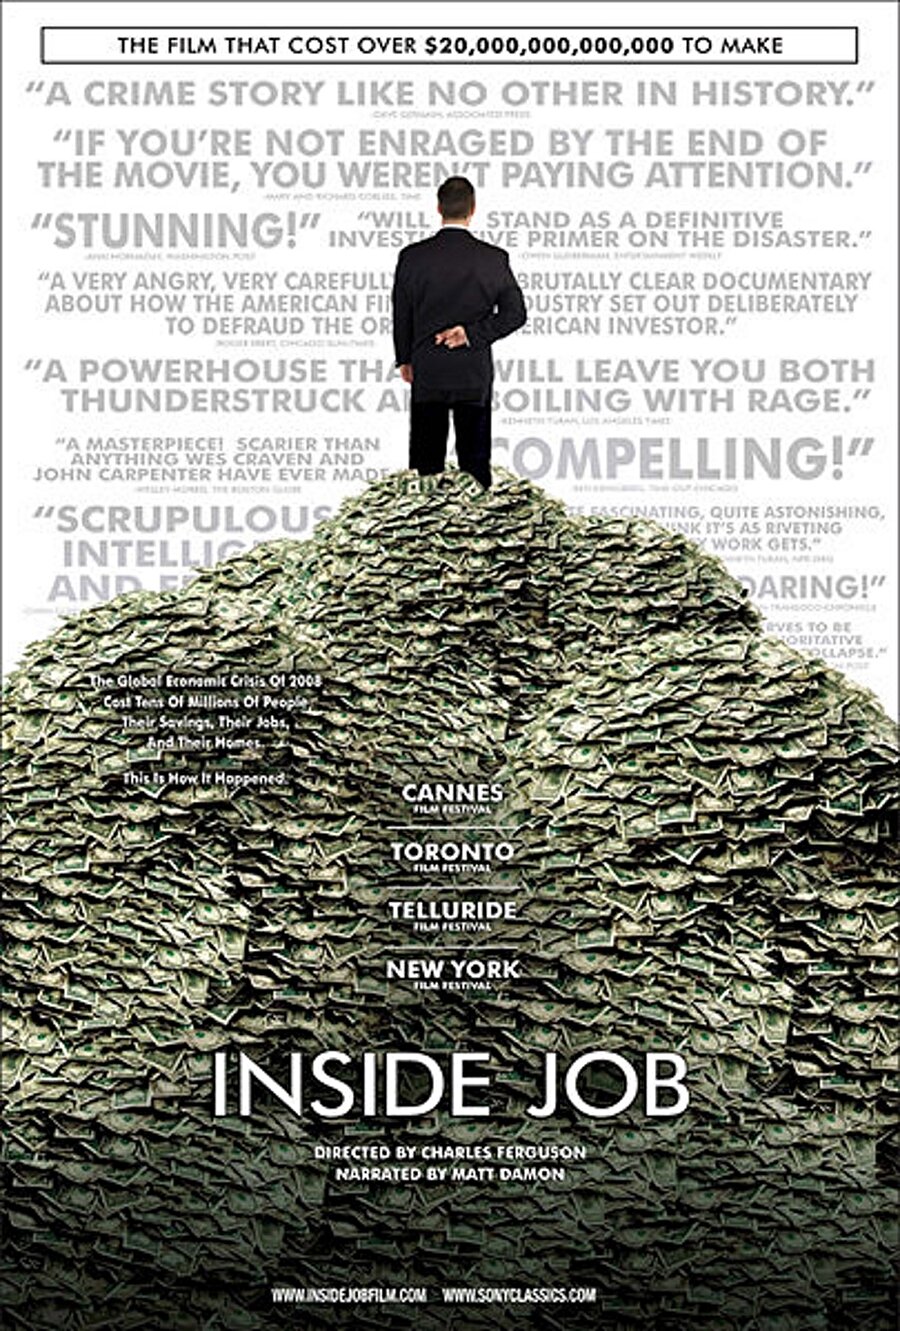 Inside Job (İç İşleri)

                                    8.3 İMDb puanı ile ne kadar başarılı bir film olduğunu gösteriyor. 2008 finansal krizini konu alan filmde, krizin arkasındaki gerçekler göz önüne serilmektedir. Belgesel niteliği taşımakta olan bu yapım 2011 yılında Akademi ödüllerinden en iyi belgesel ödülünü kazanmıştır. 
                                